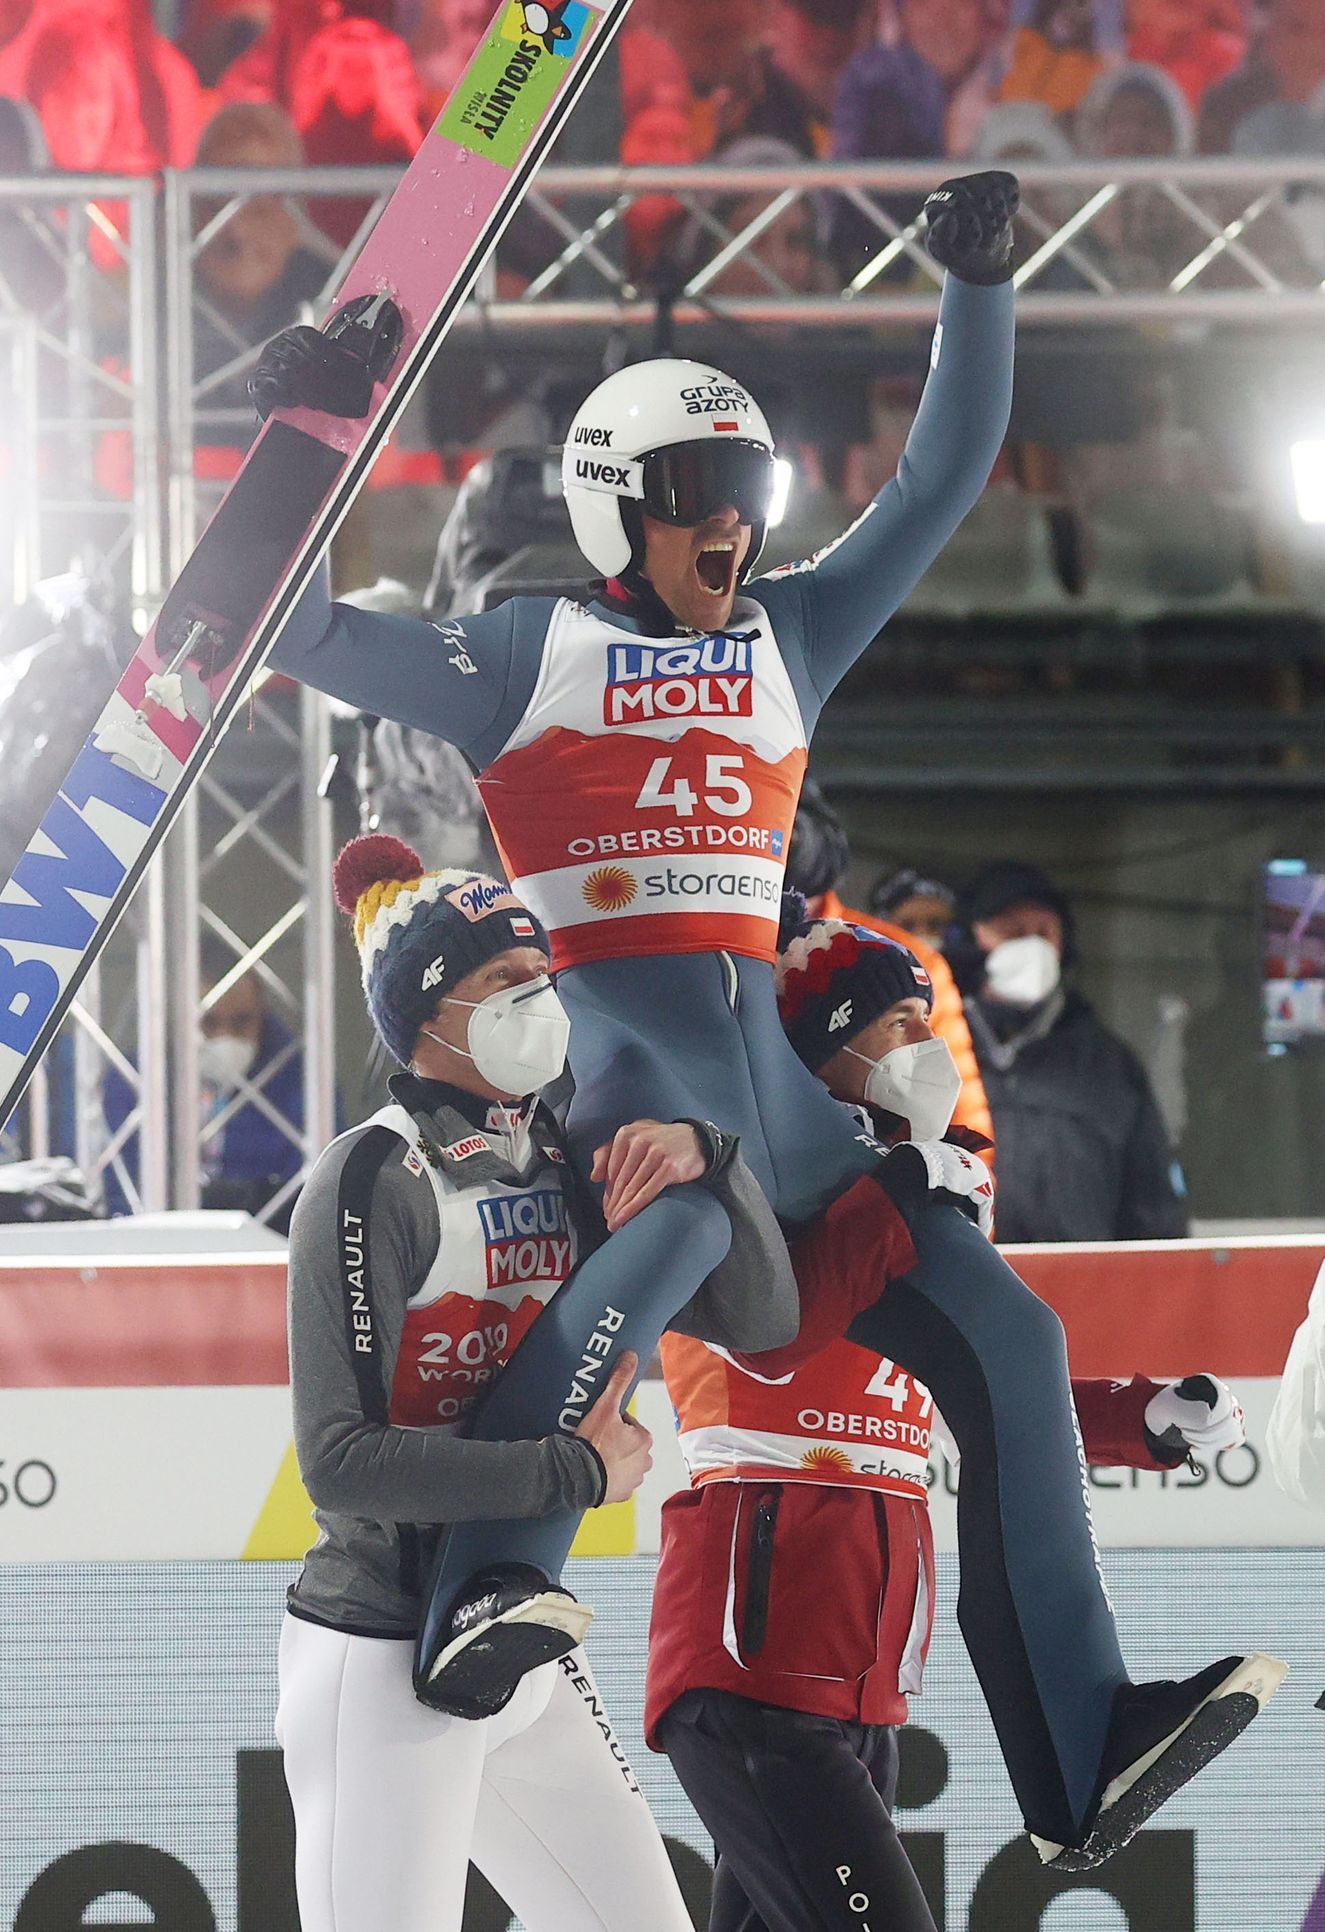 MS v klasickém lyžování 2021: Polák Piotr Žyla slaví výhru v závodě na středním můstku